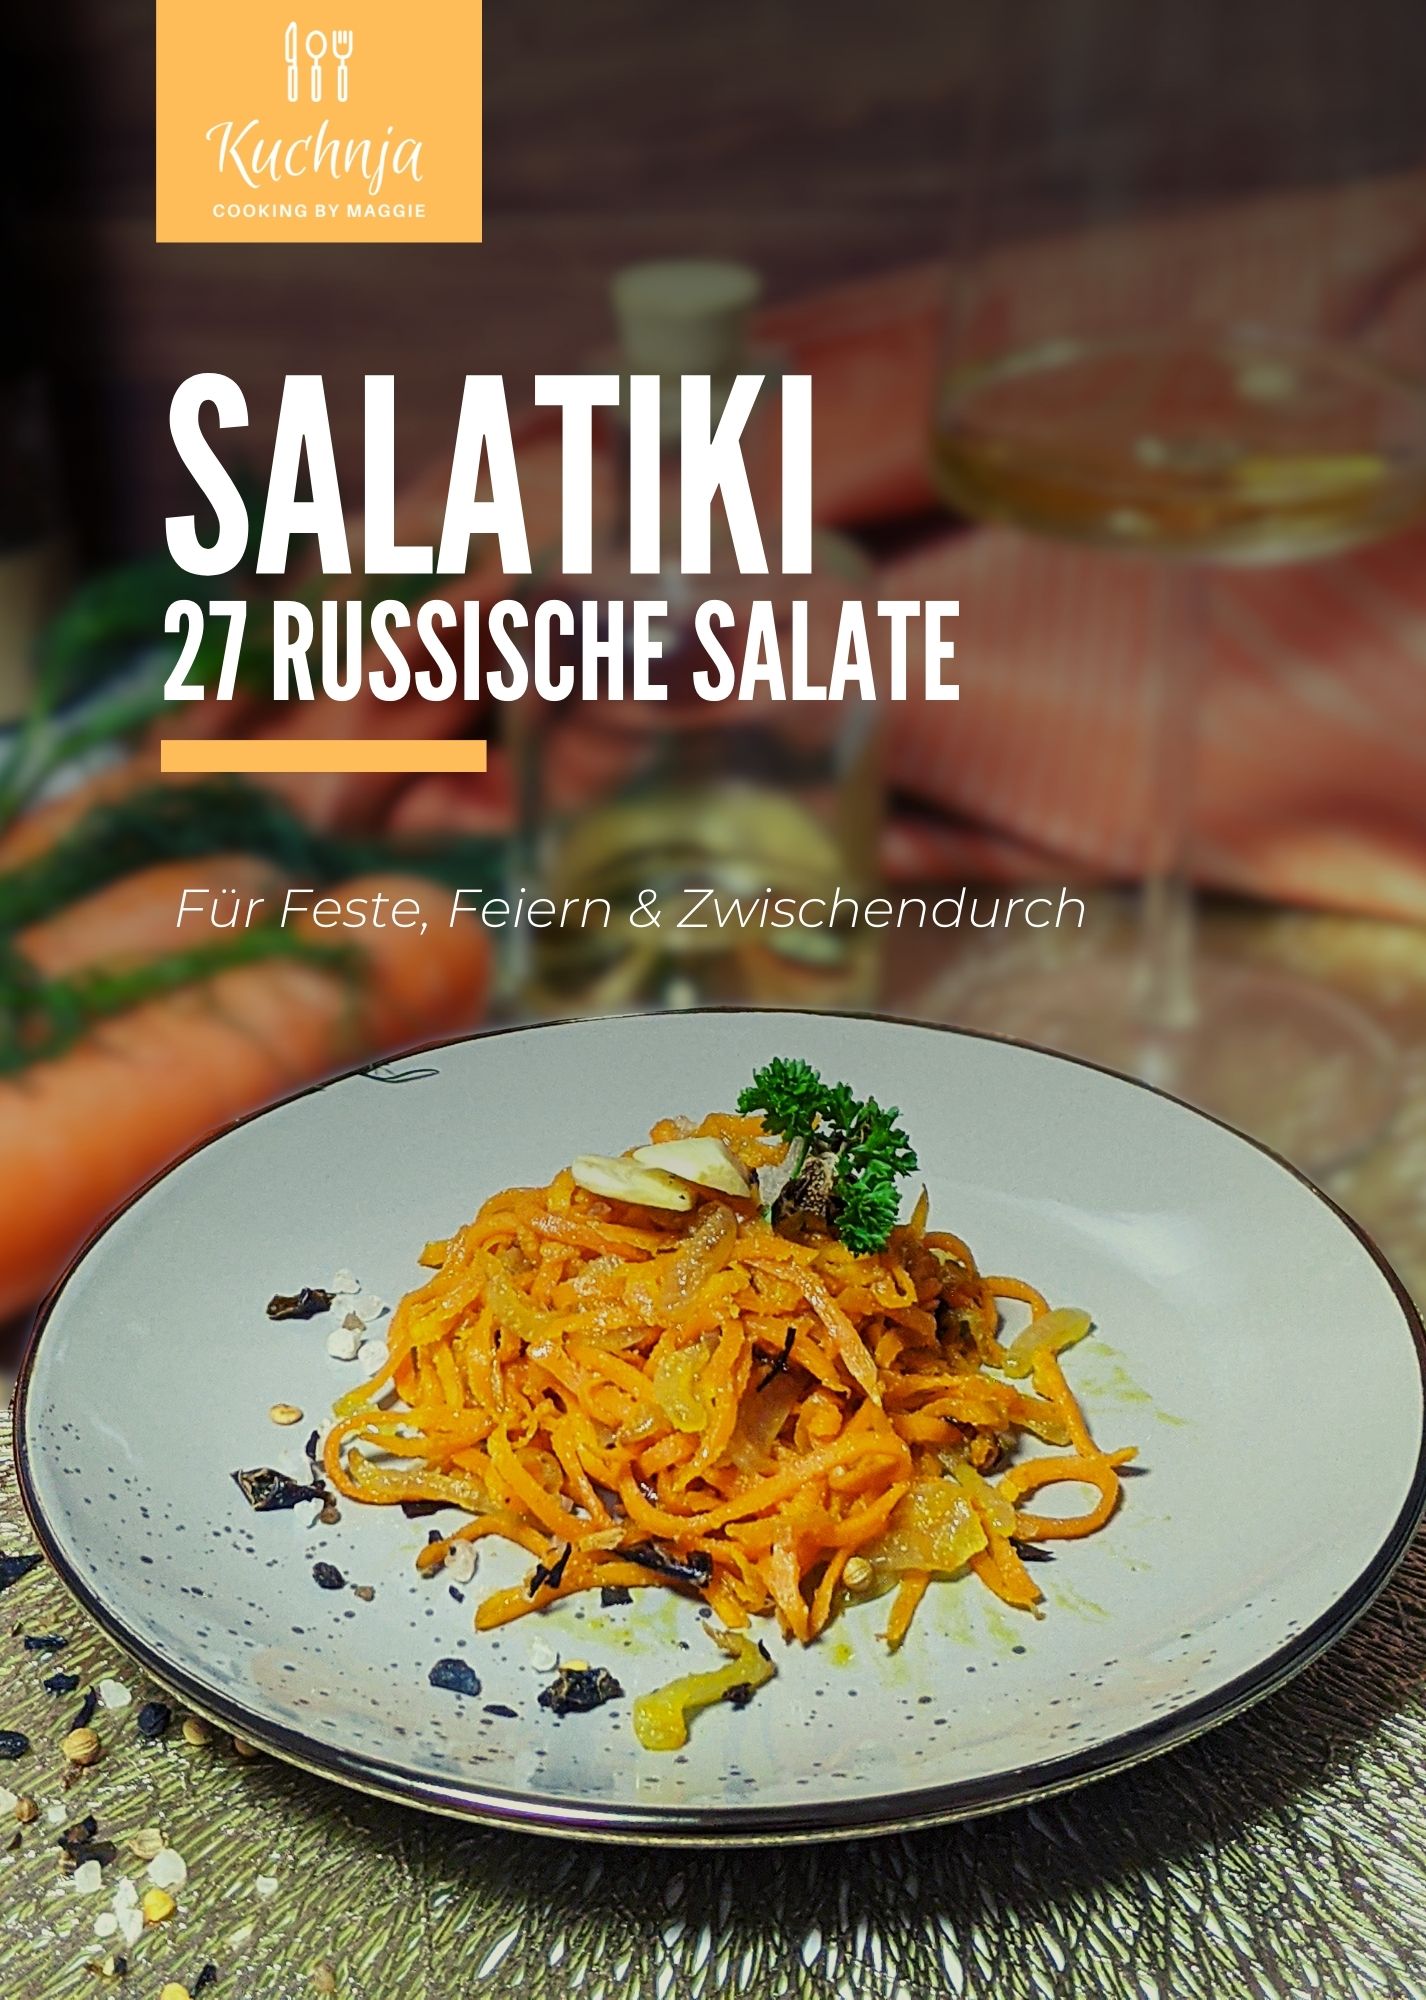 Kuchnja: Salatiki - 27 russische Salate by Maggie Rittscher